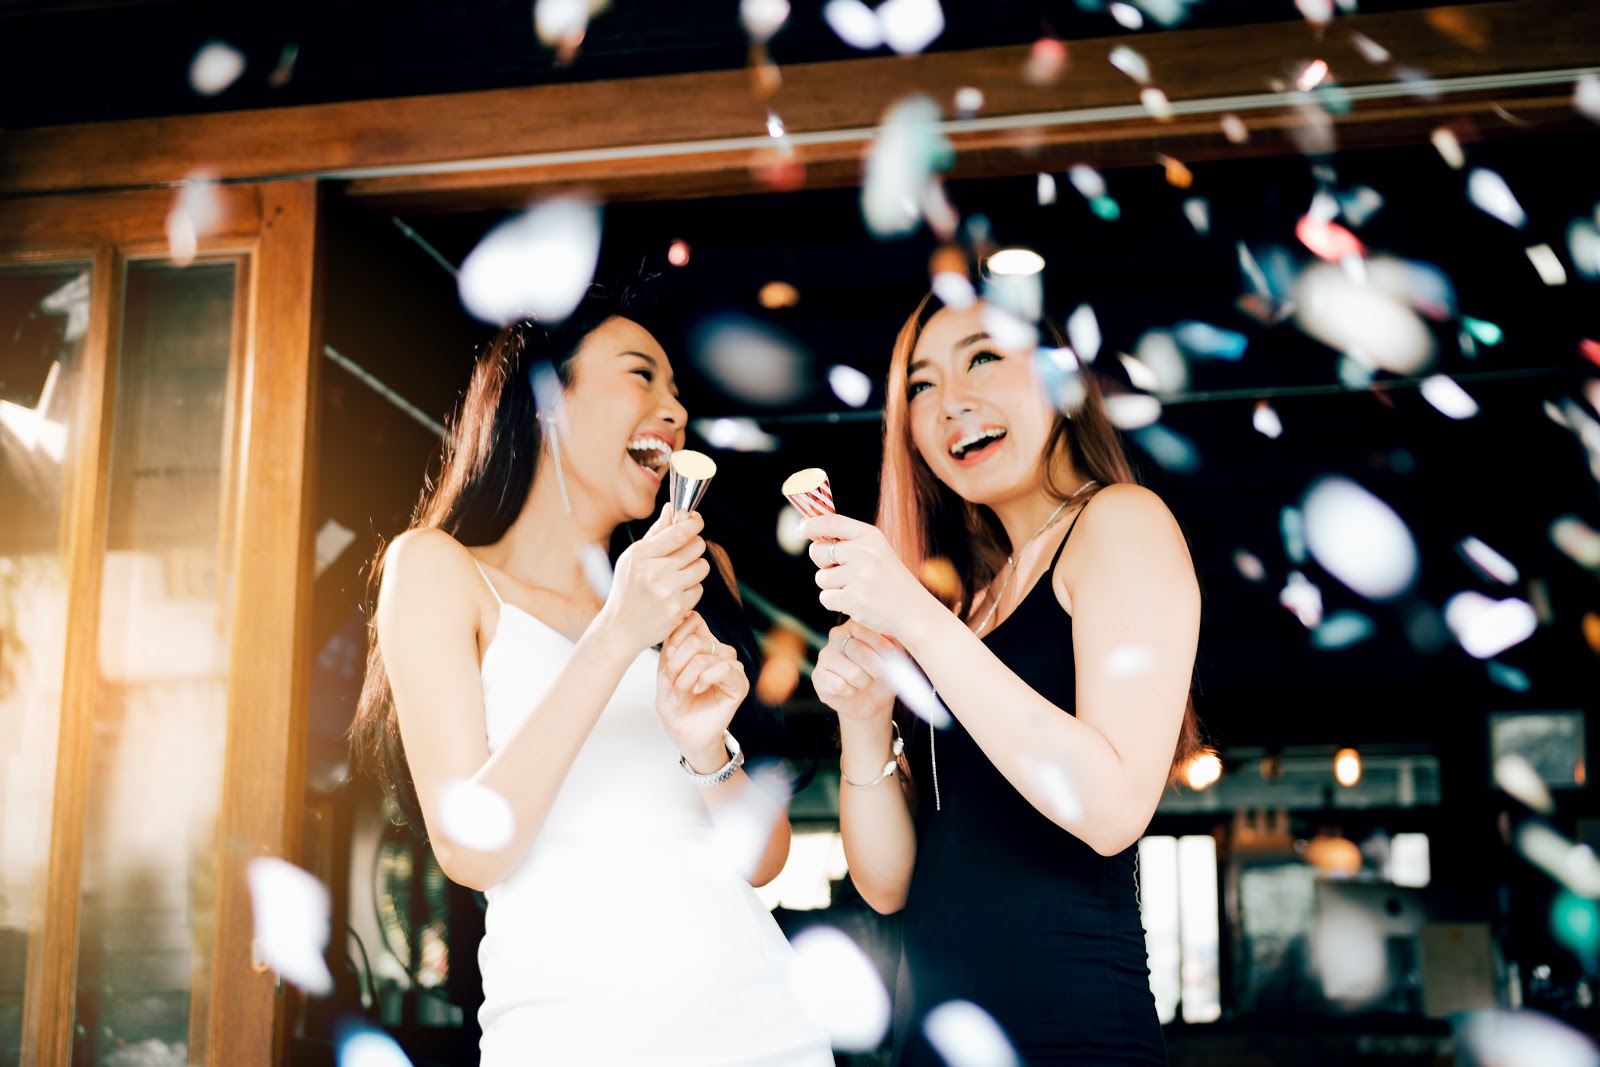 Two female graduates celebrating